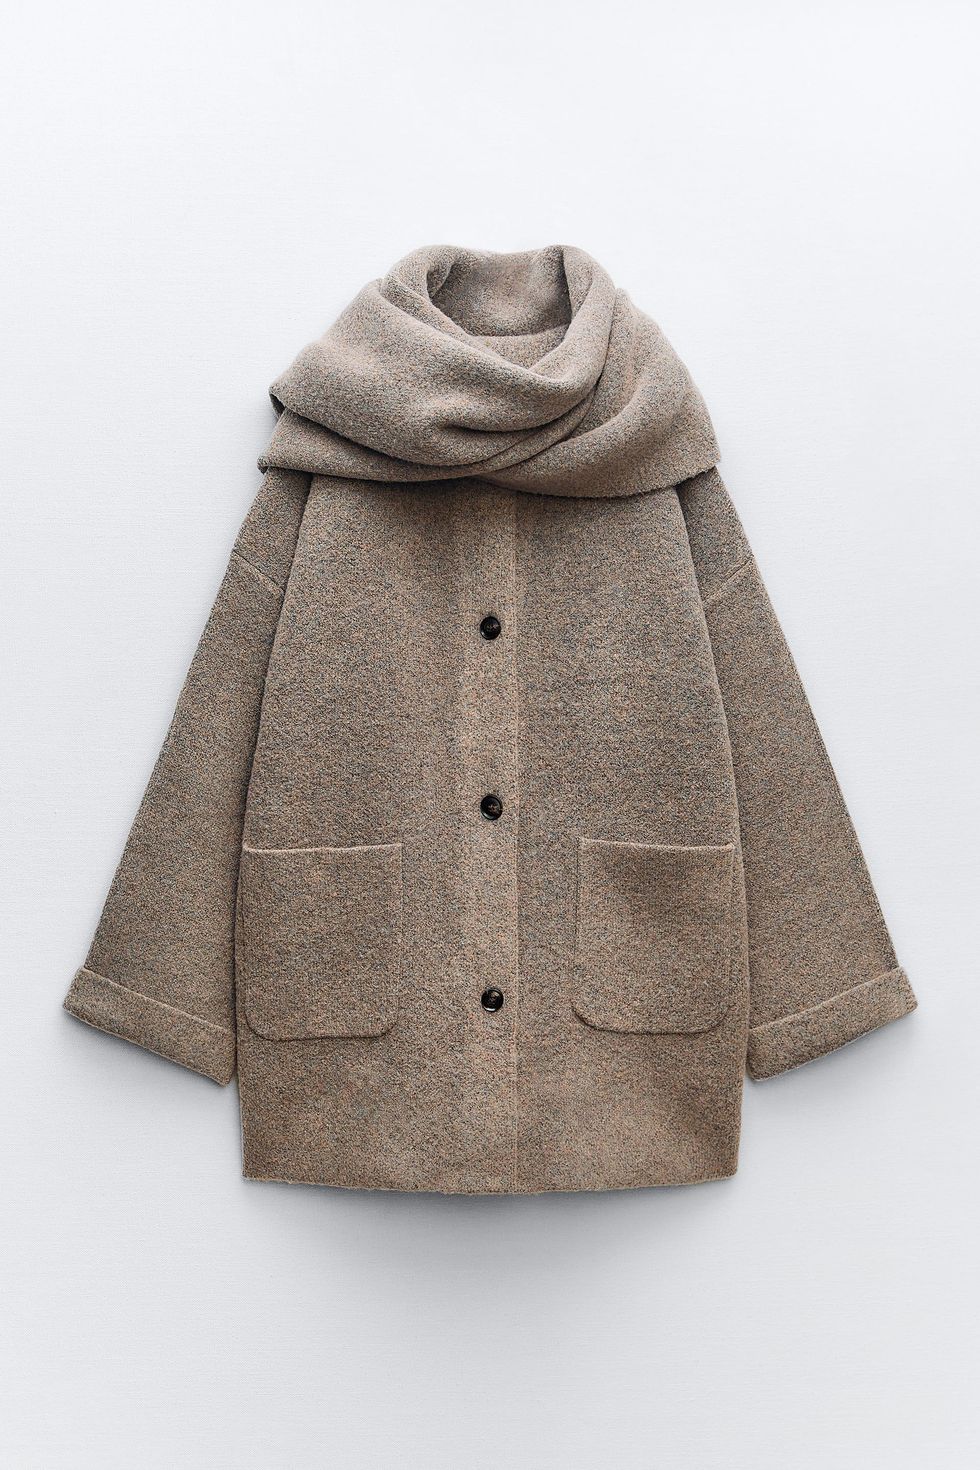 El abrigo camel de Zara que no te hará parecer más mayor